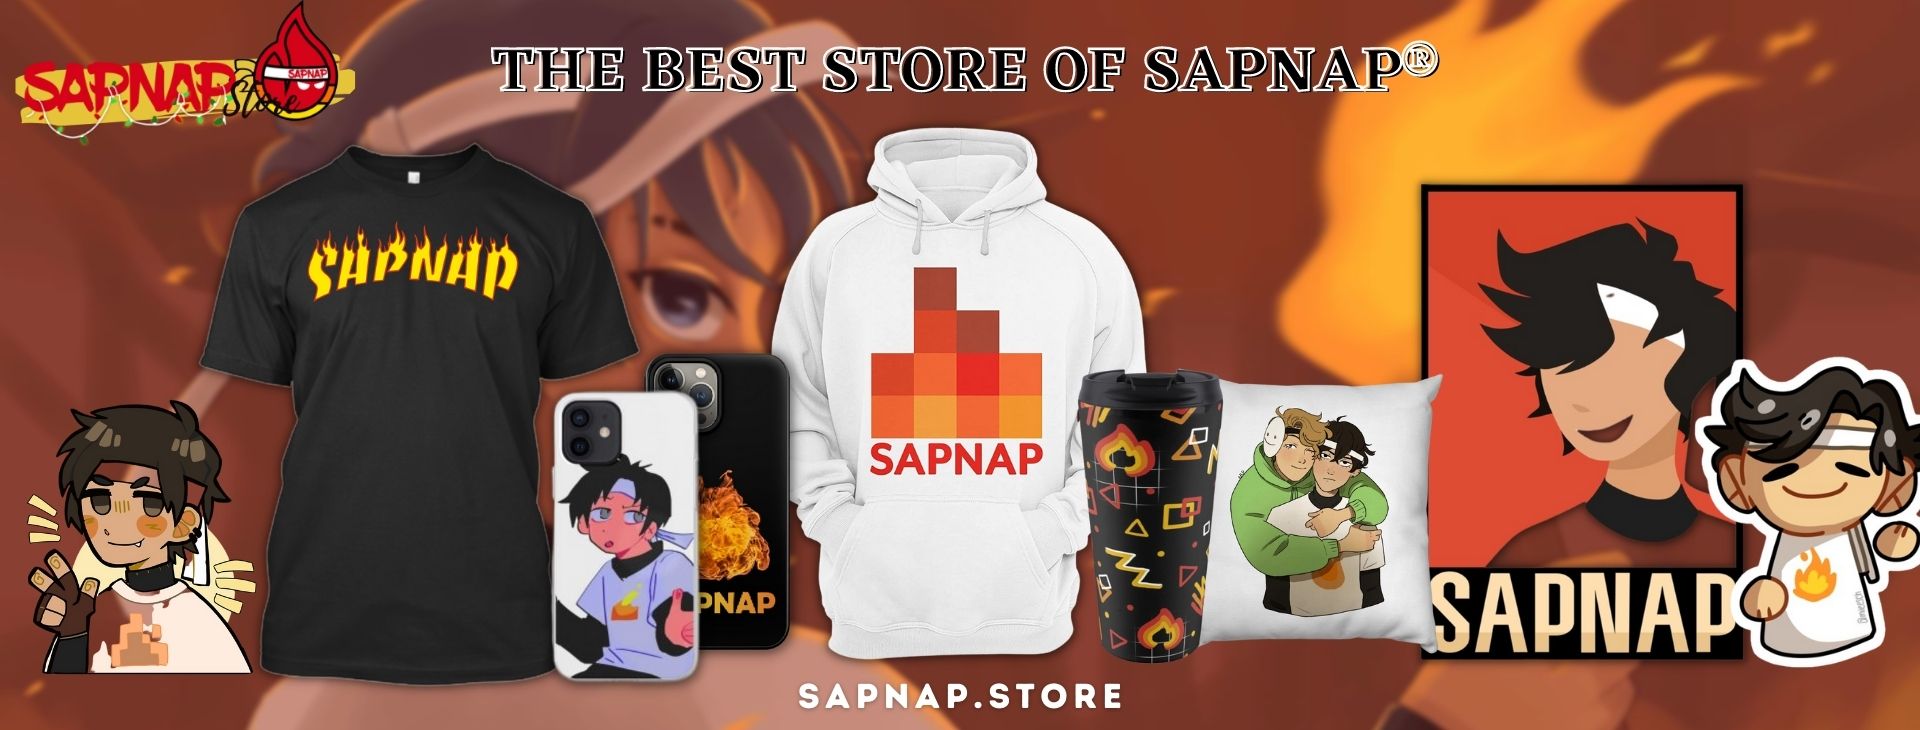 SAPNAP STORE Banner - Sapnap Store